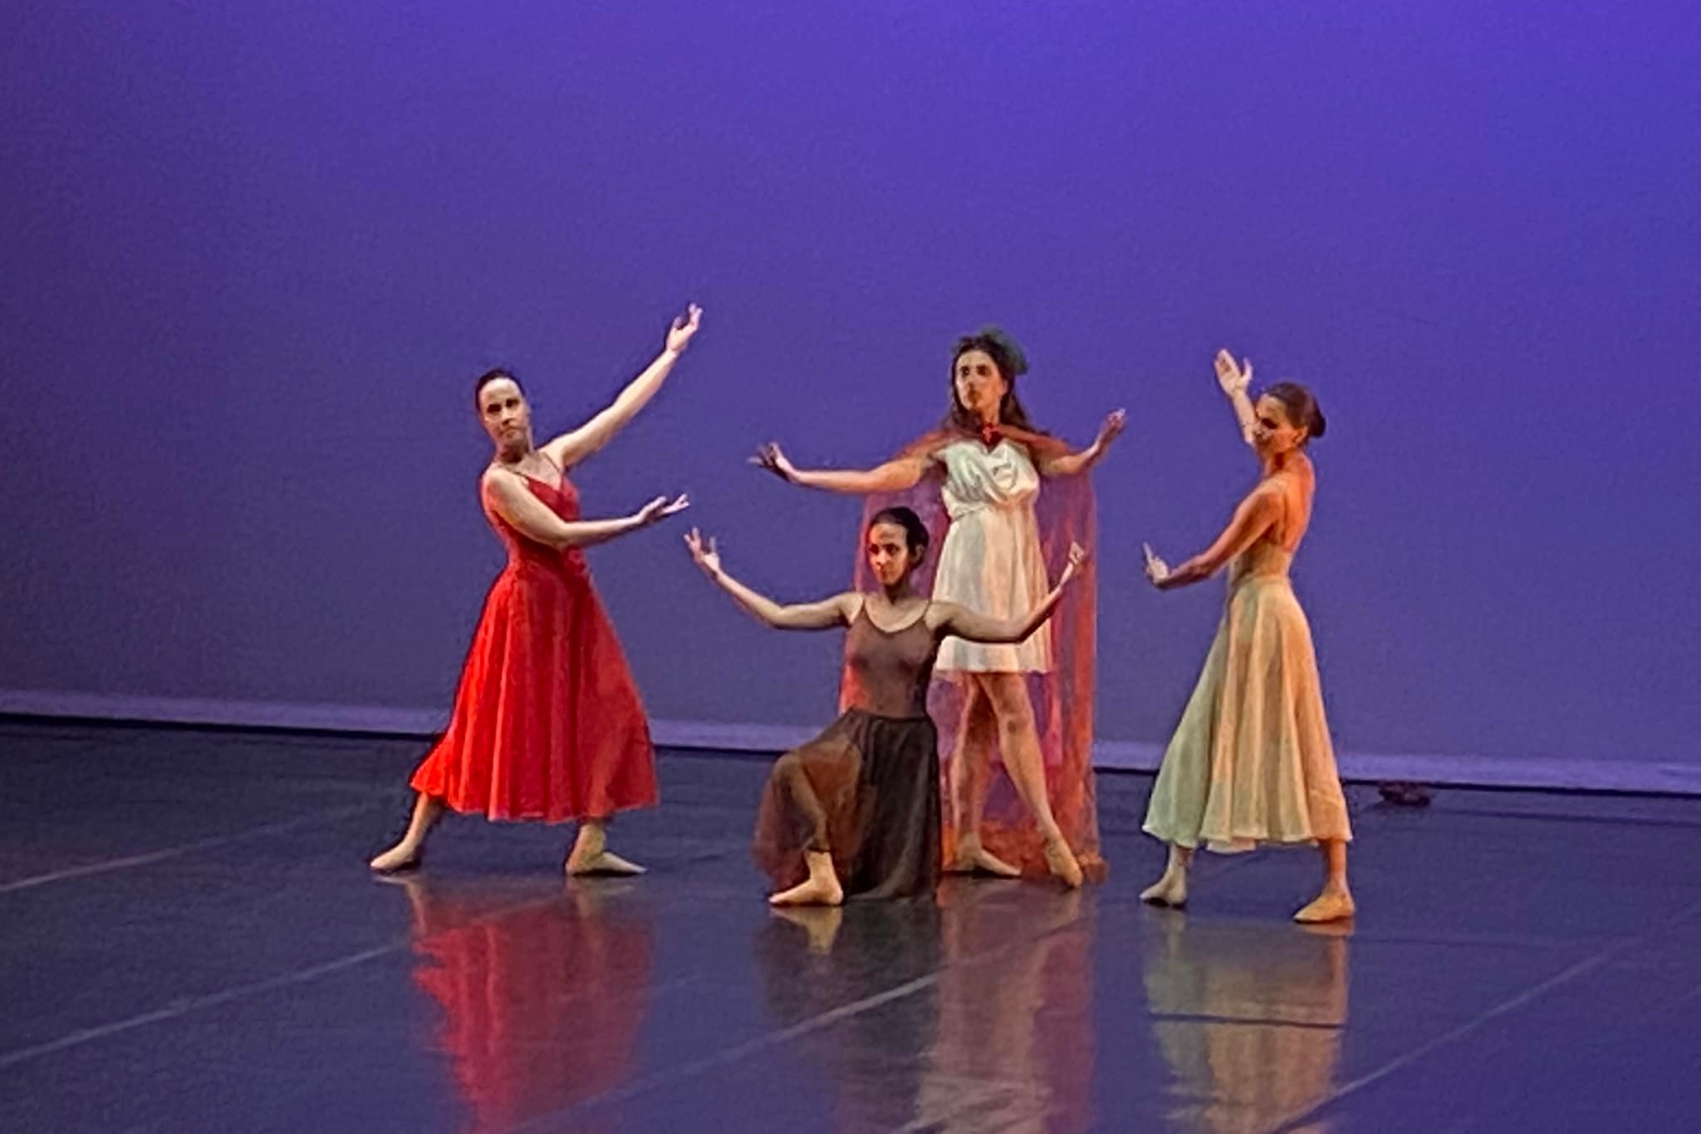 Quatro bailarinas em palco simbolizando o tempo (as quatro décadas).